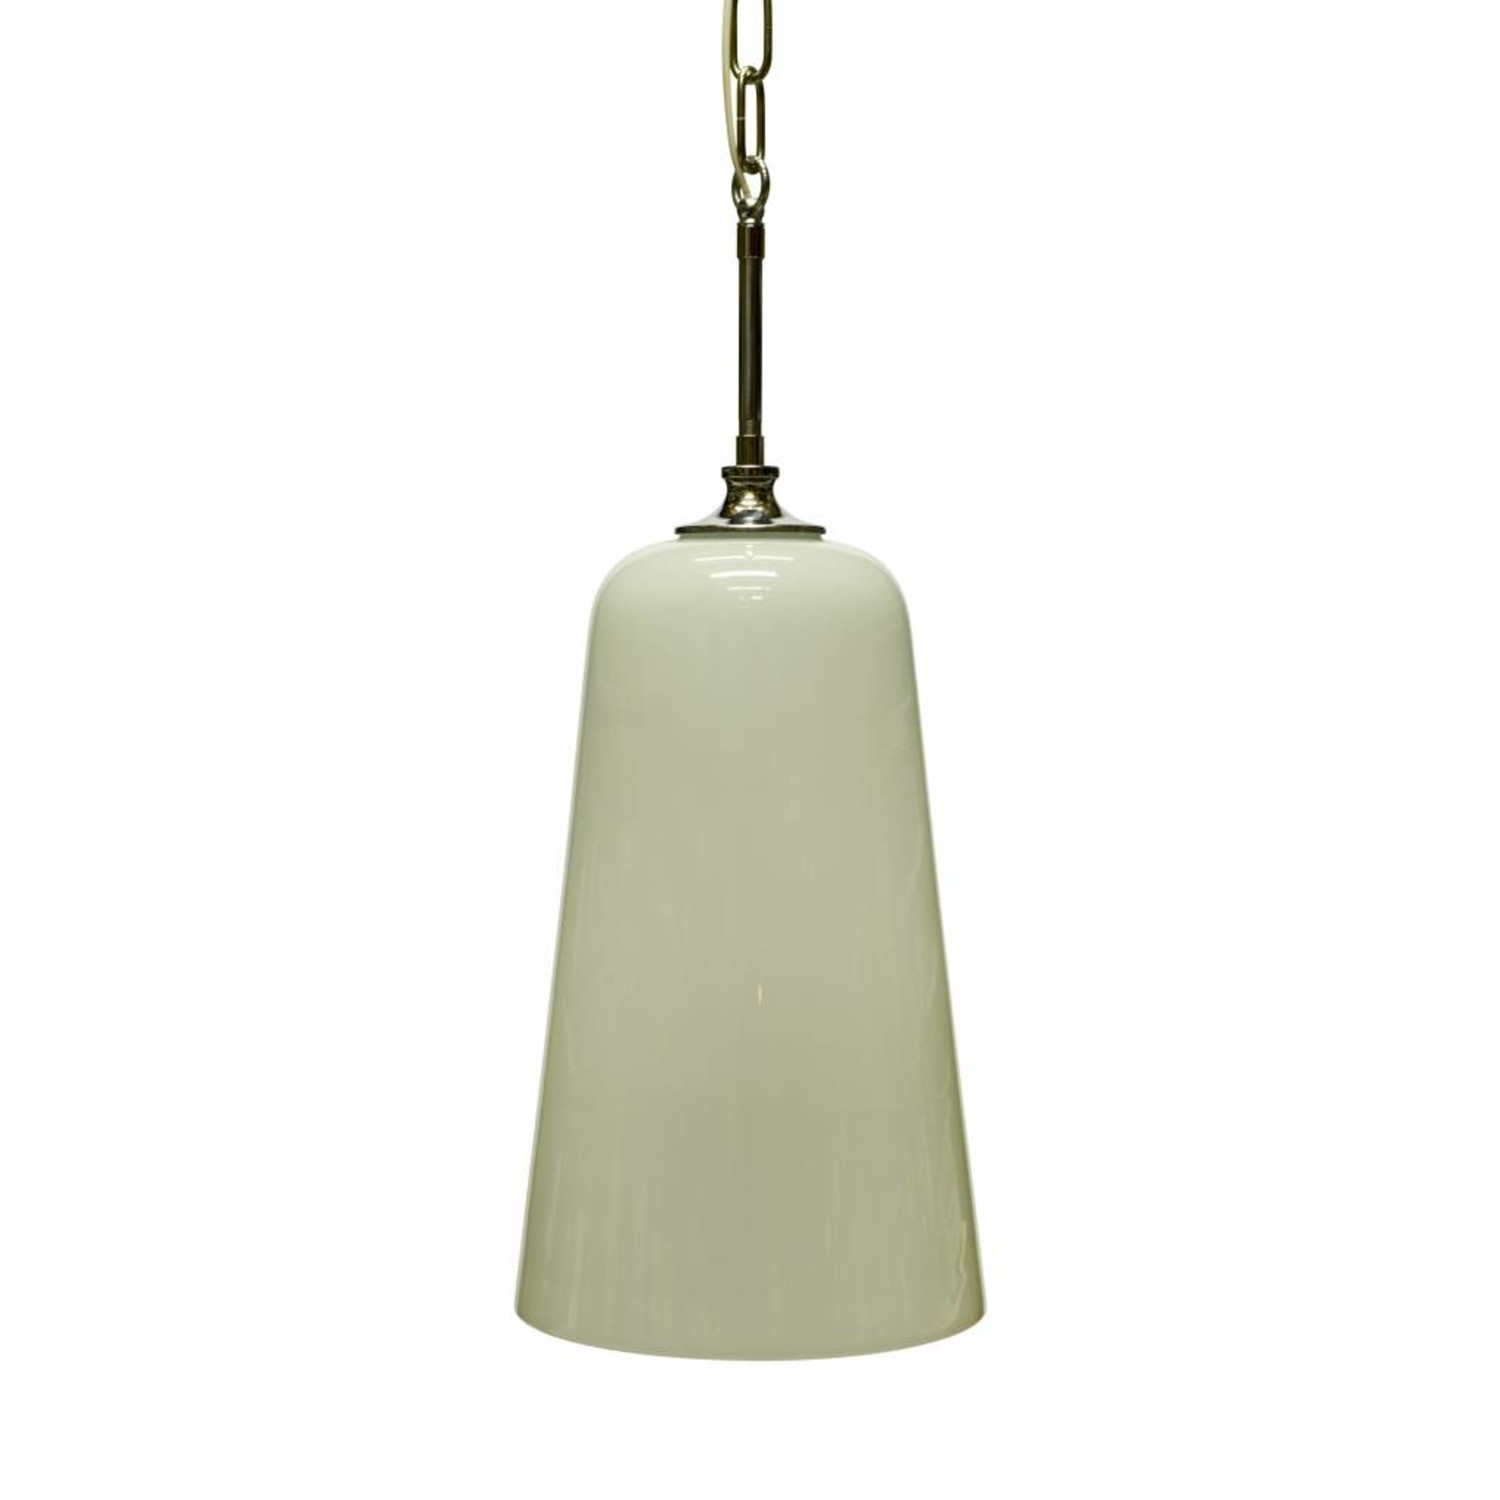 945 Intrekking na school Hanglamp wit glas, jaren 60 - Lamplord